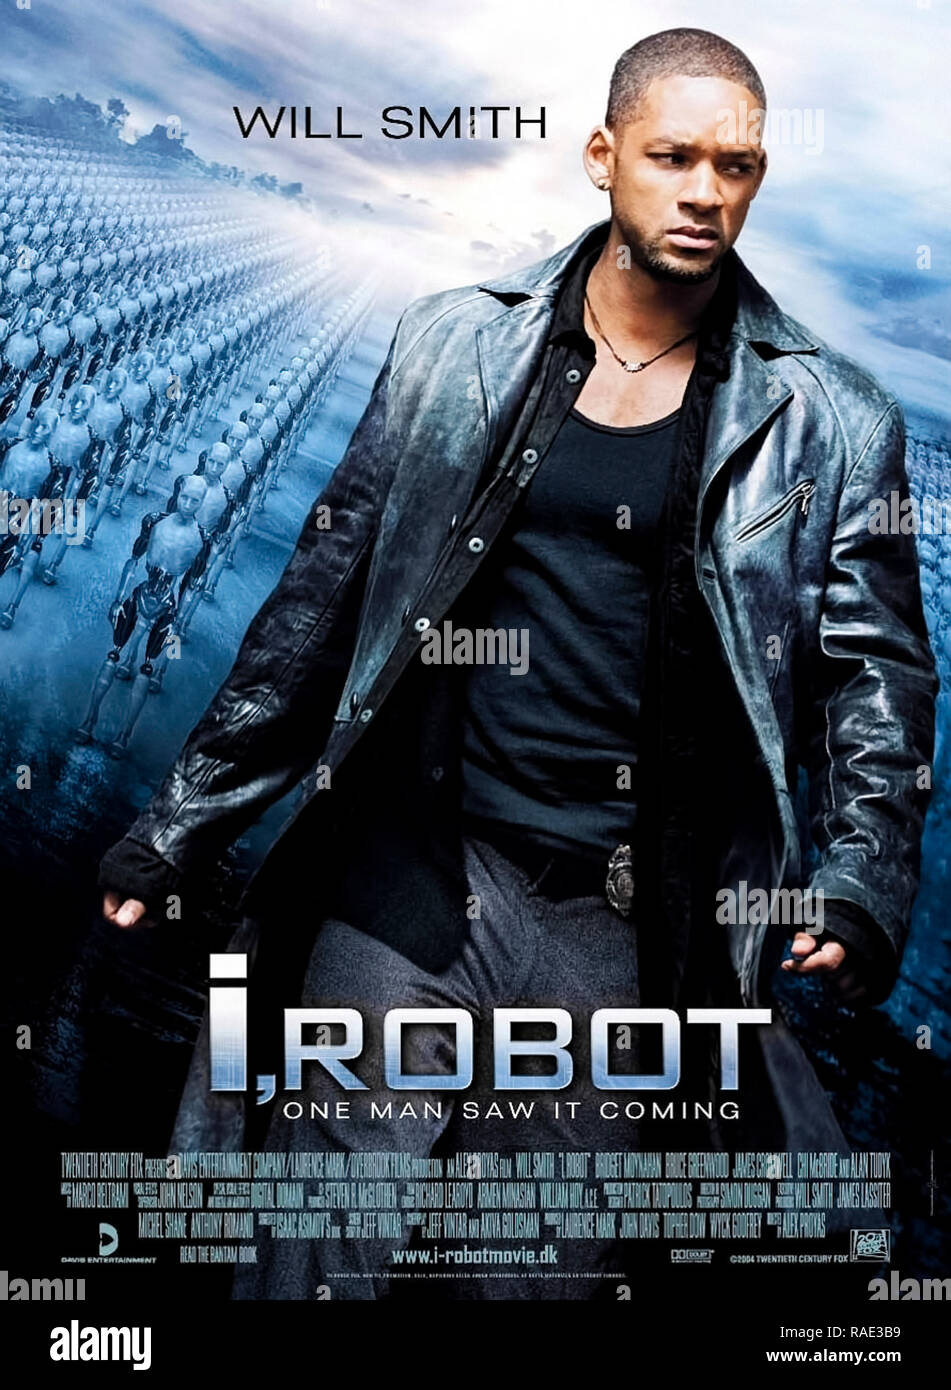 2004 US-Plakat für "I, Robot" mit Will Smith als technophobic Detektiv einige Details aus der gleichnamigen Sammlung von Kurzgeschichten von Isaac Asimov. Stockfoto